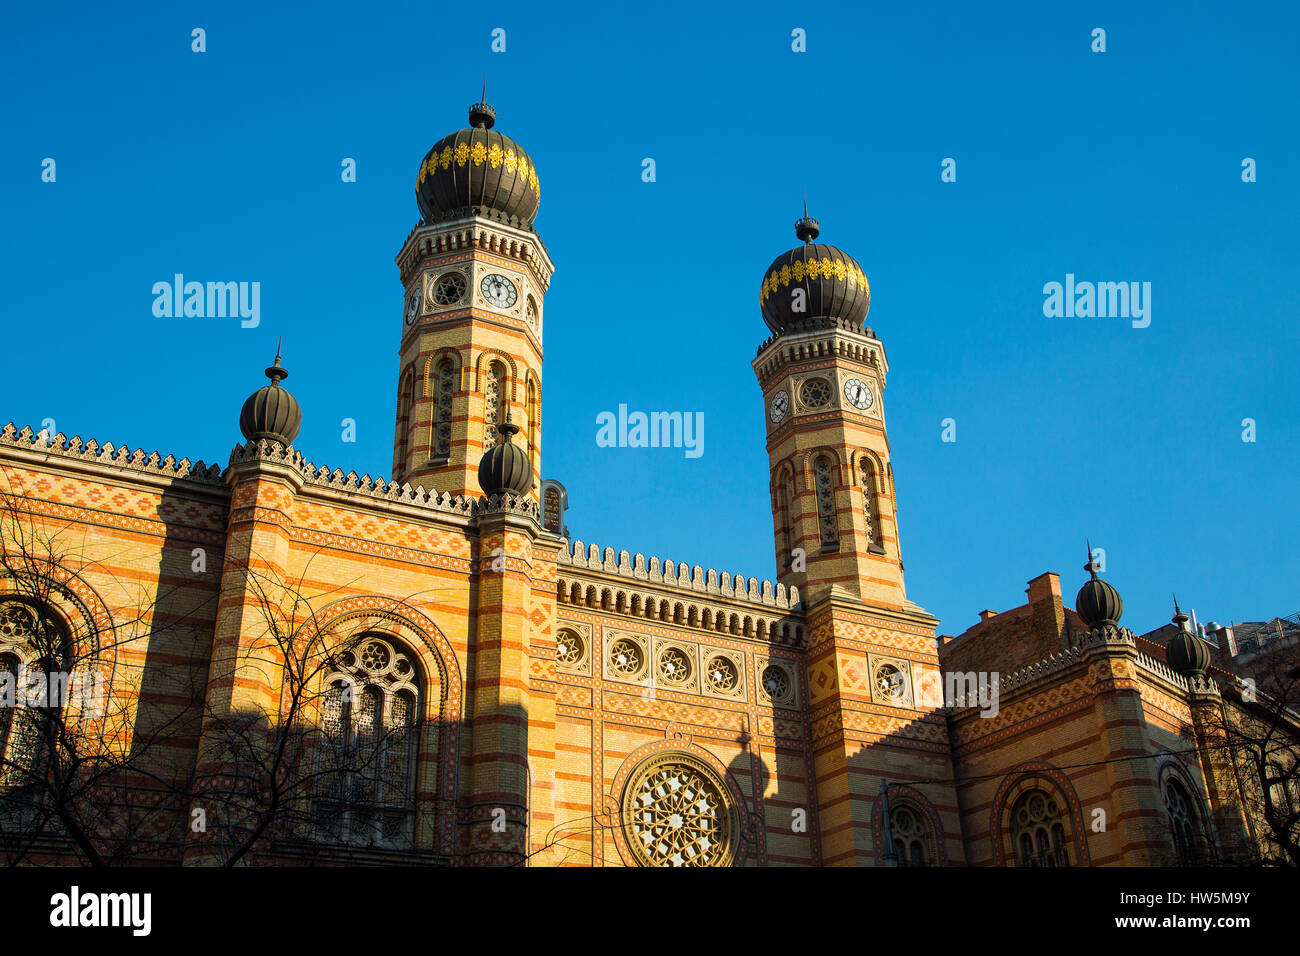 Dohány-Straße oder große jüdische Synagoge Nagy zsinagóga. Die zweitgrößte Synagoge der Welt Revival im maurischen Stil gebaut. Budapest Ungarn, So Stockfoto